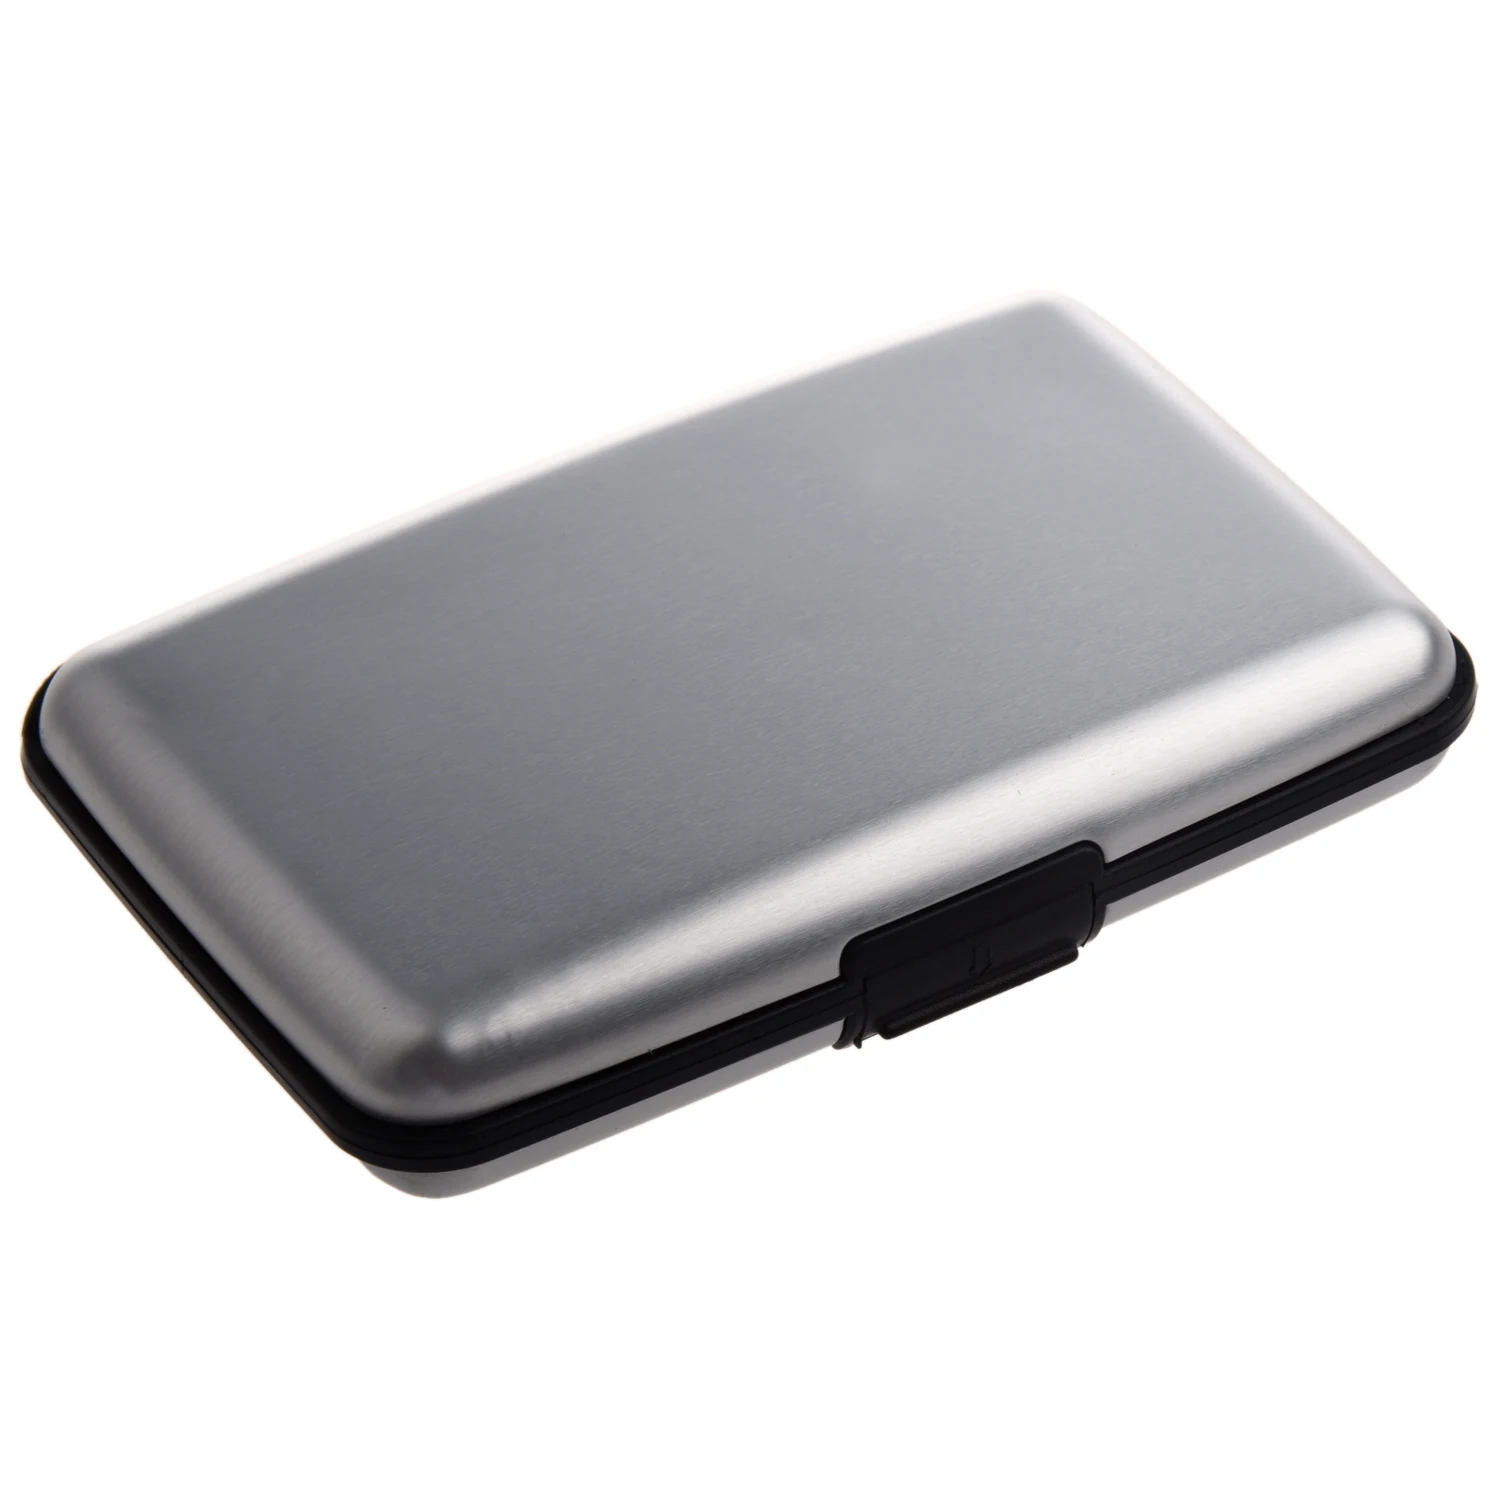 Алюминиевый металлический кошелек чехол с отделениями для кредитных карт, один размер в серебре